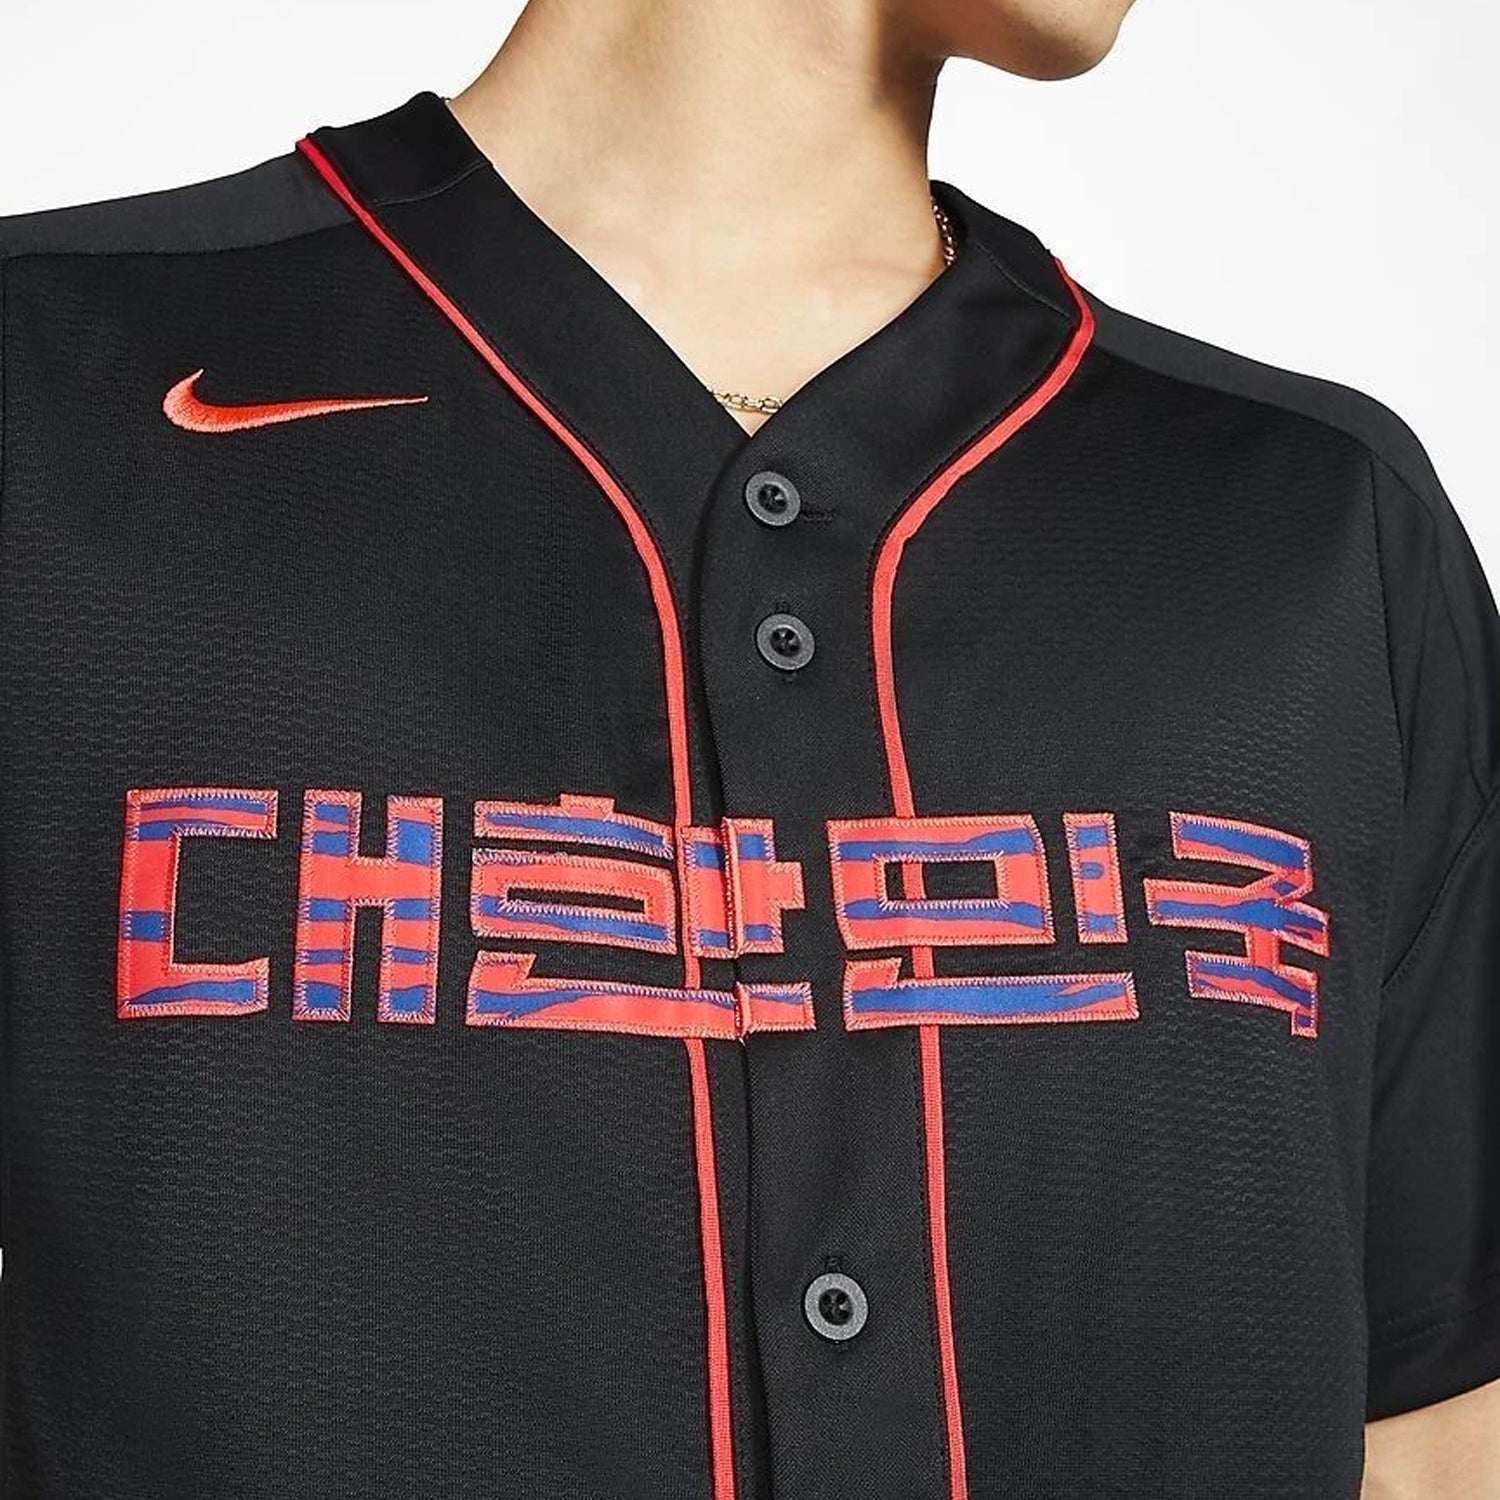 korean baseball jerseys